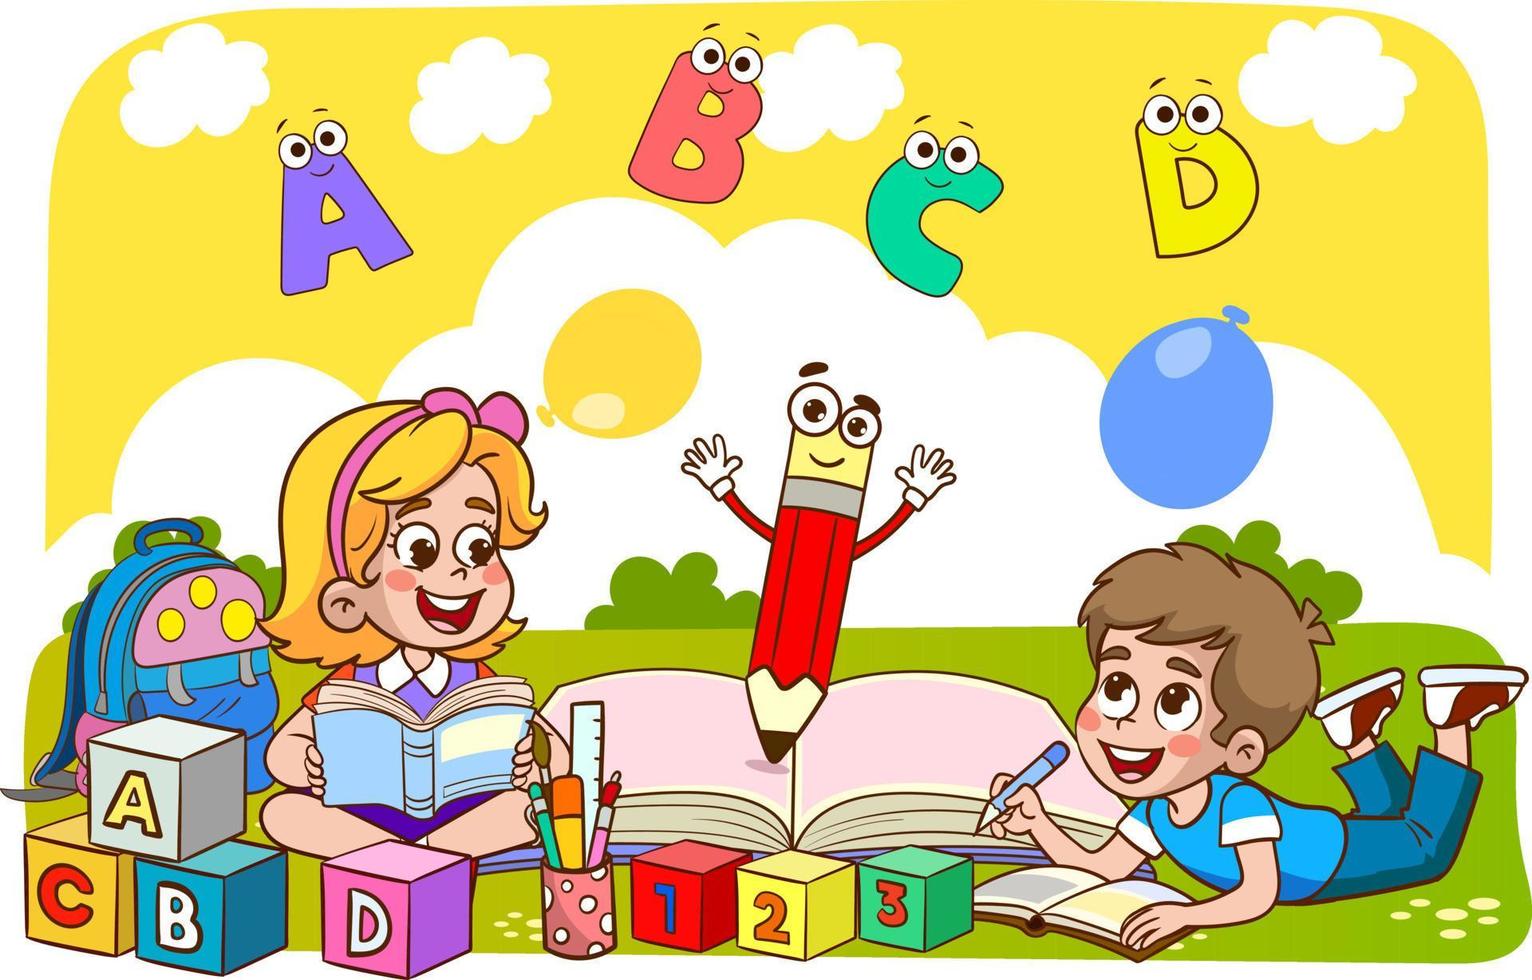 niños discutiendo la tarea y leyendo libros juntos. ilustración vectorial de la educación infantil vector